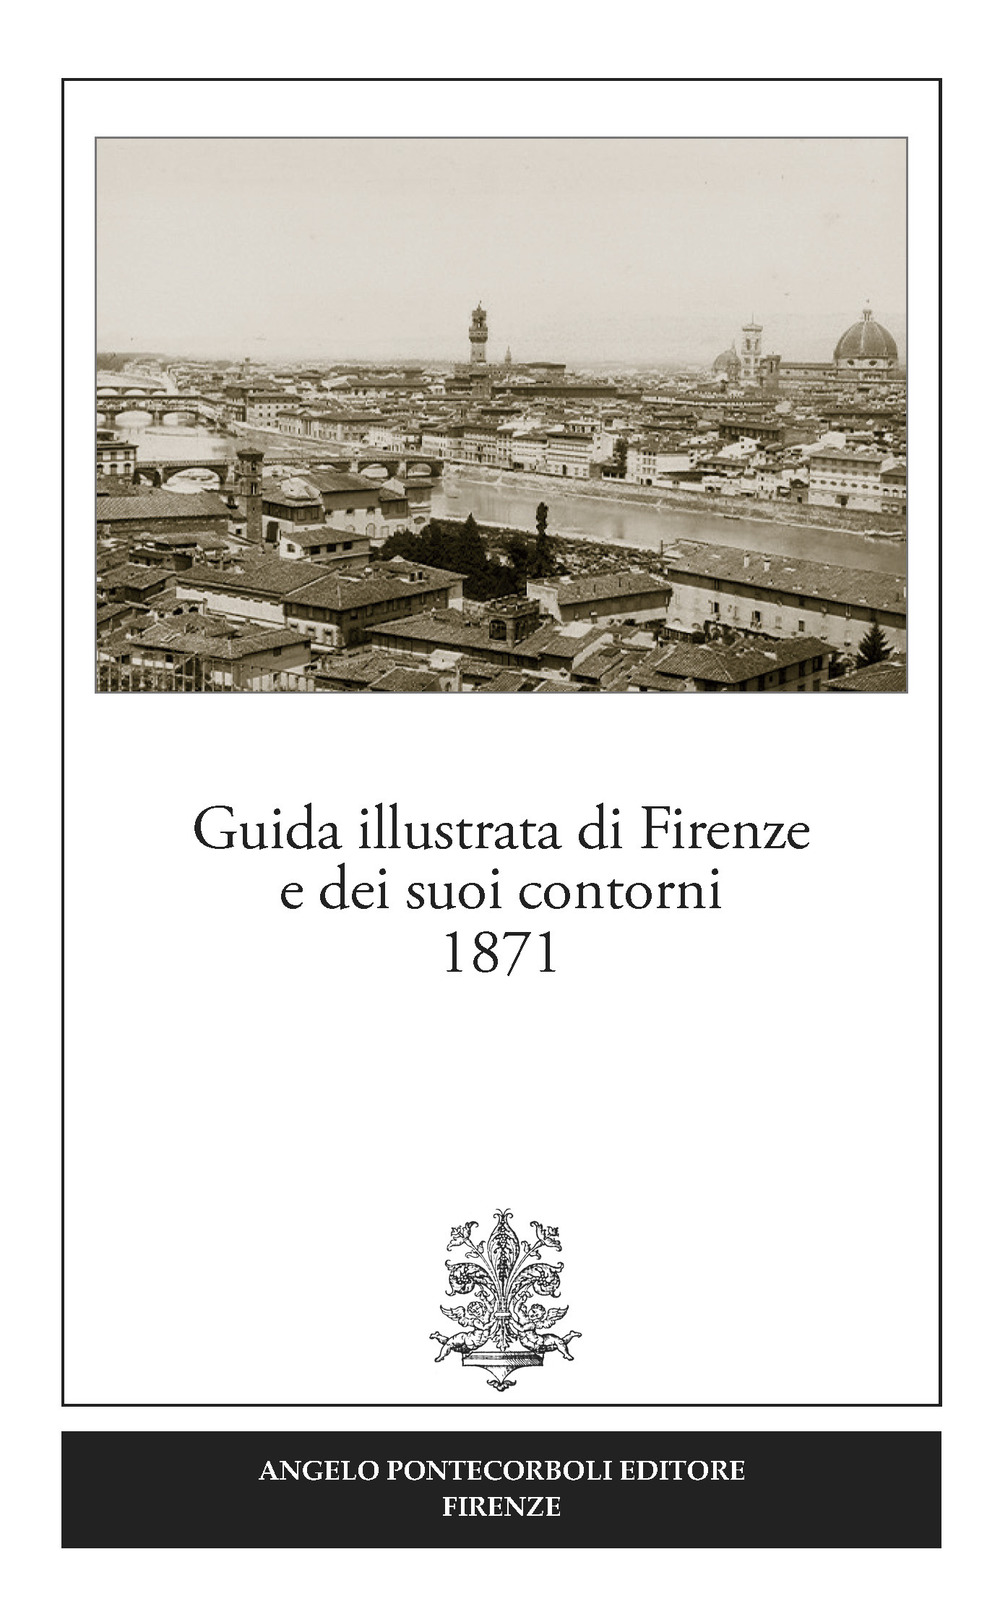 Guida illustrata di Firenze e dei suoi contorni 1871 (rist. anast.). Ediz. in facsimile